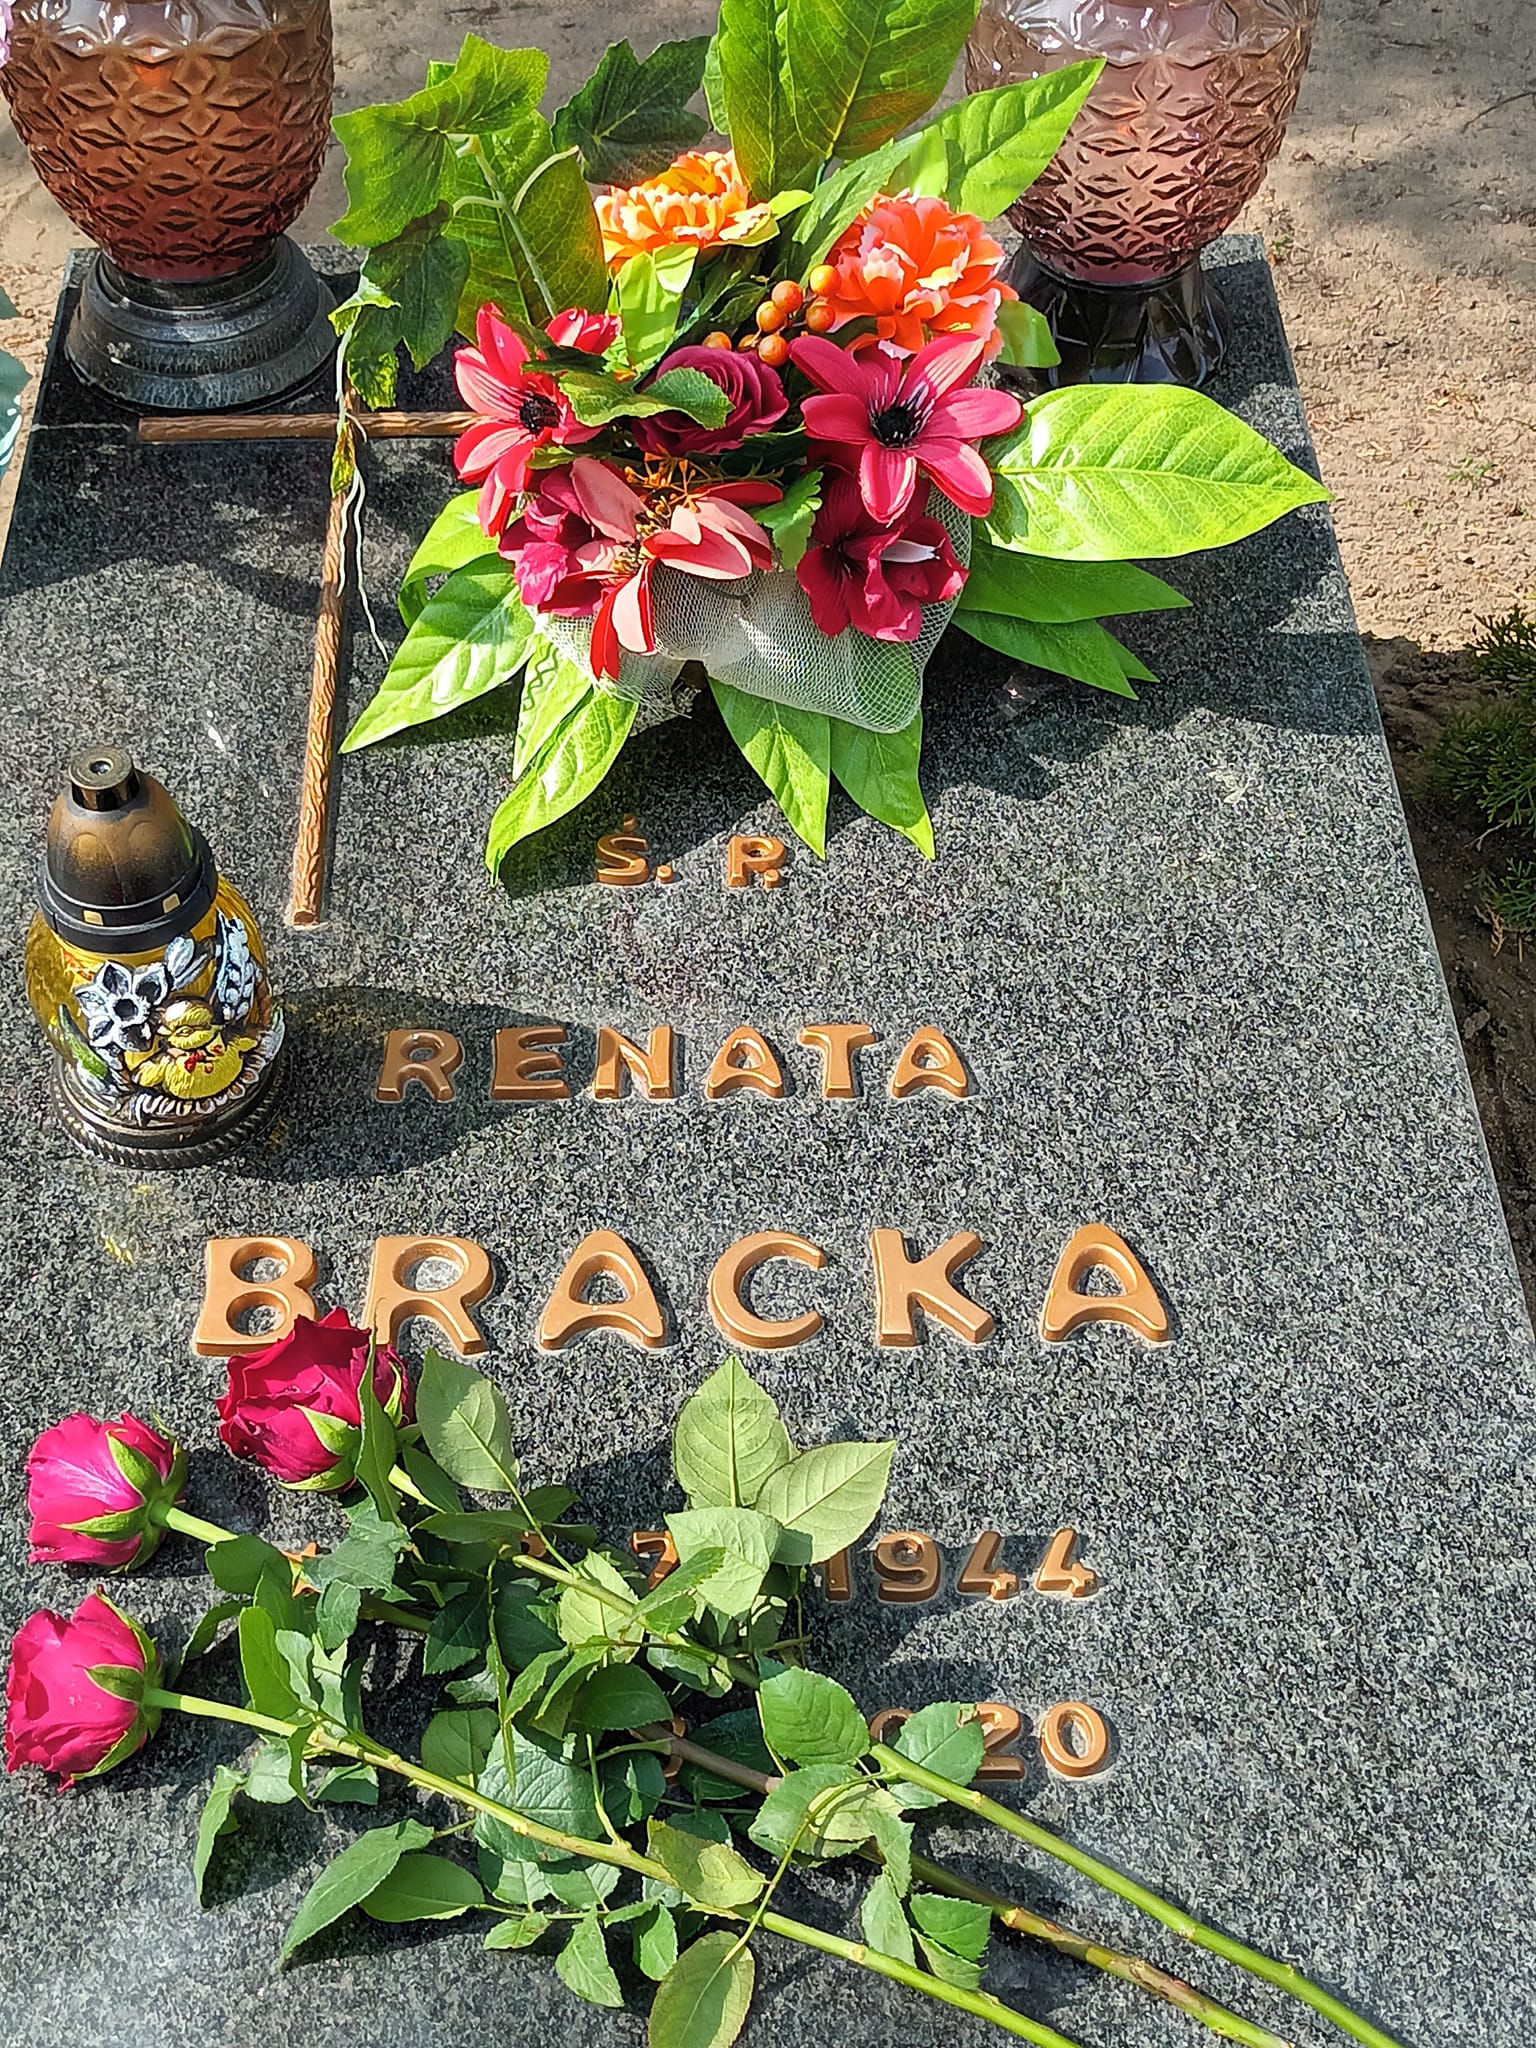 Dziś mija 22 miesięcznica przedwczesnej śmierci mojej Mamy ś.p. Renaty Bracka, Którą teraz odwiedziłem w miejscu spoczynku na Cmentarzu Komunalnym w Więcborku. Tomasz Roman Bracka